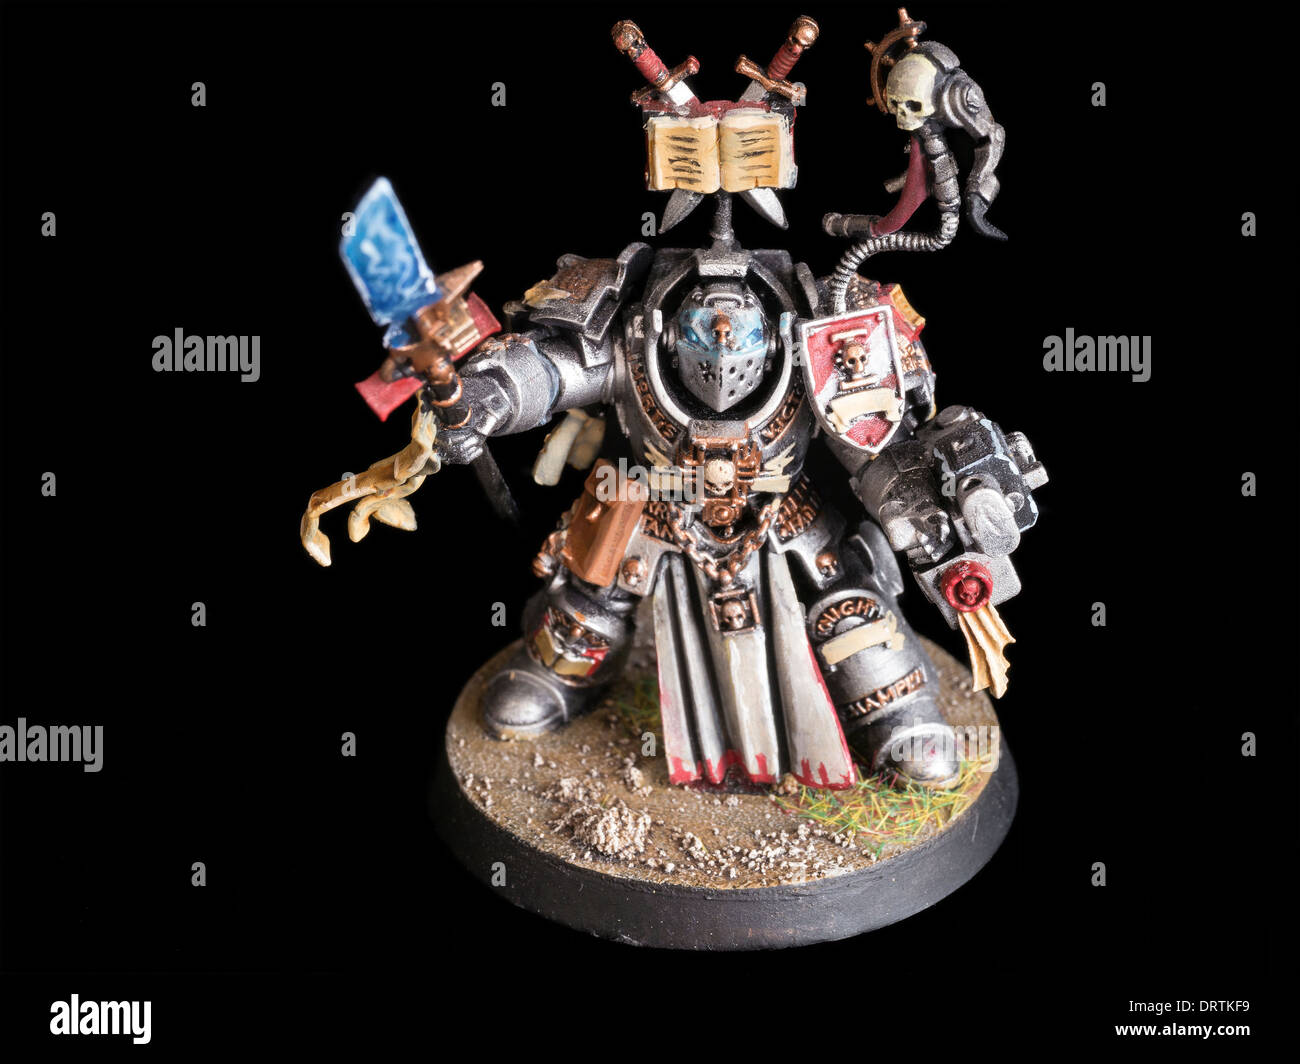 El caballero gris Terminator pintados a mano de Games Workshop Warhammer 40,000 figura en miniatura Foto de stock